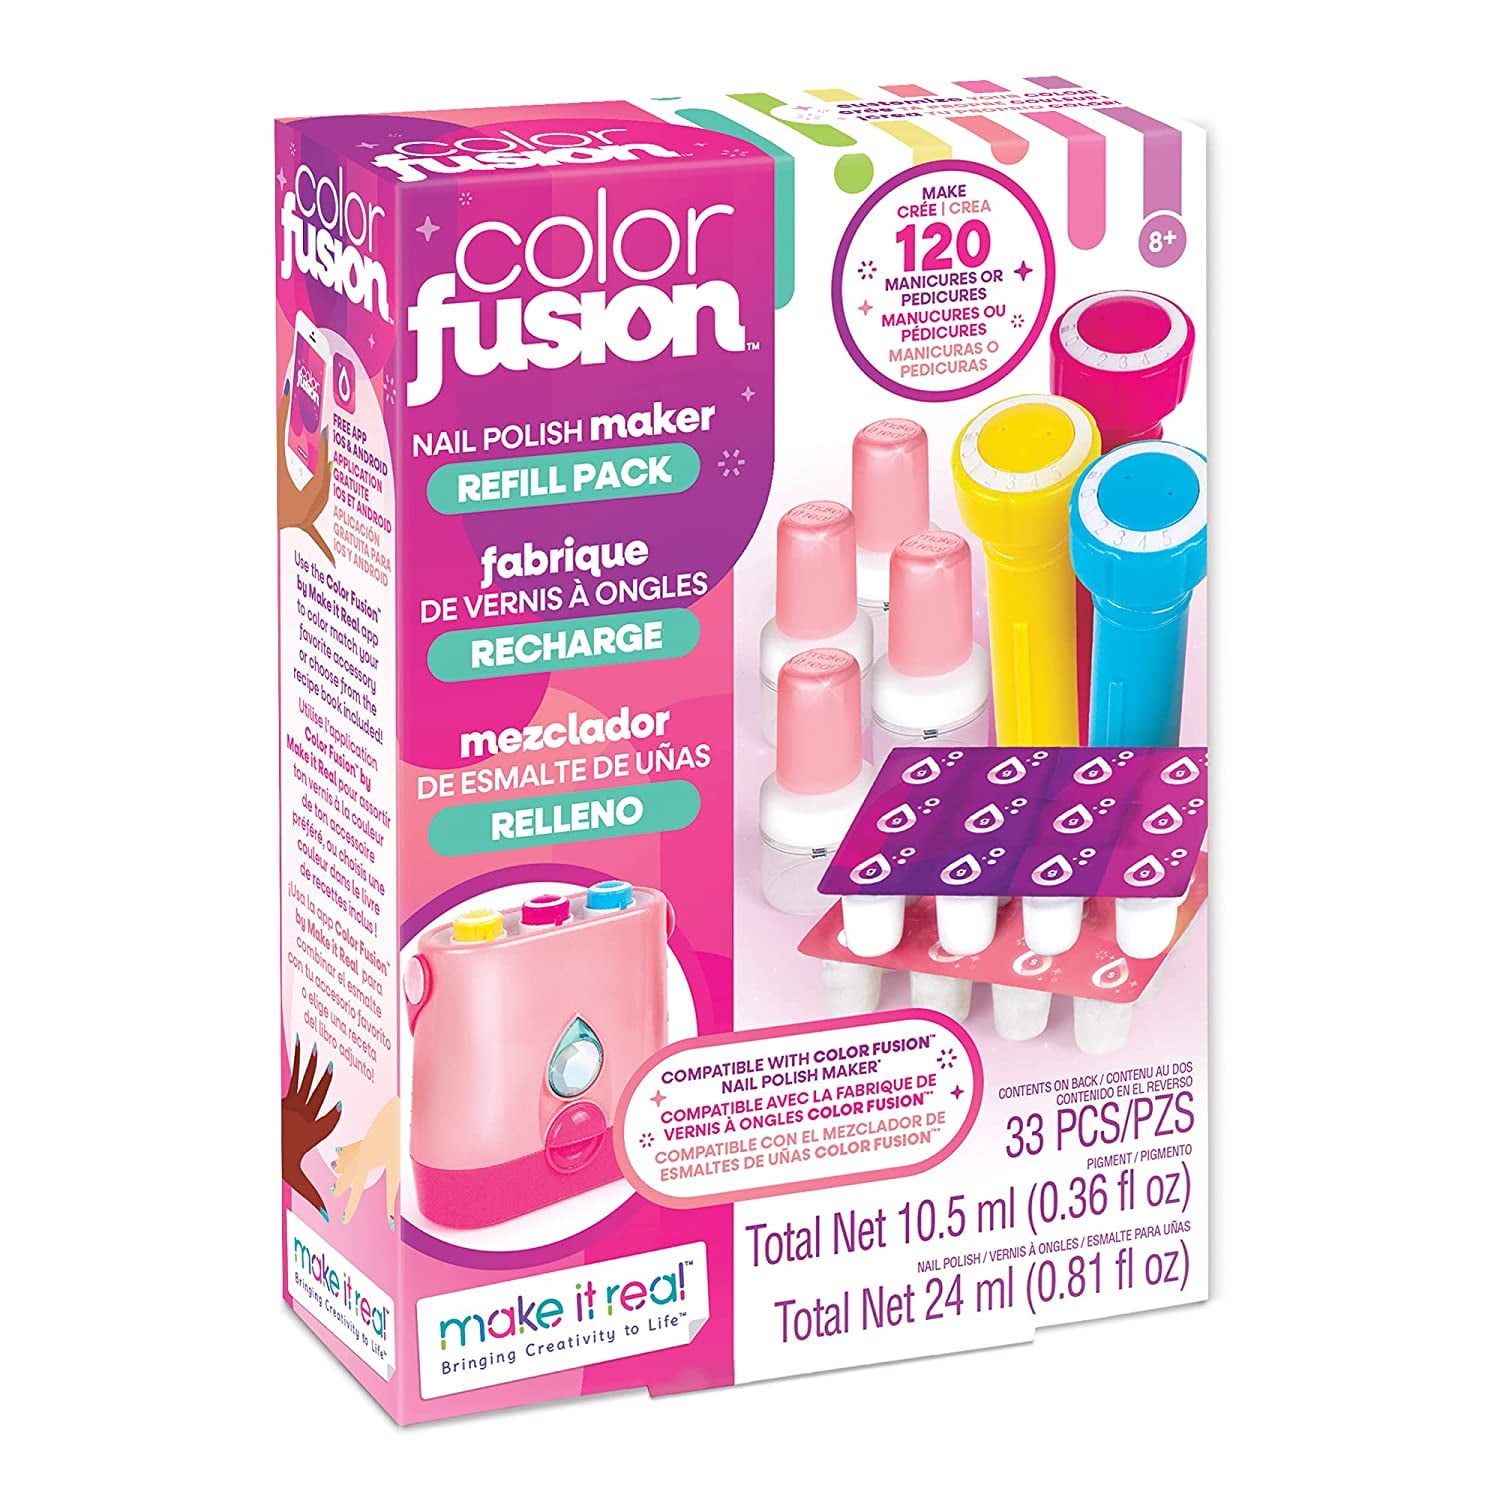 Make It Real Color Fusion Nail Polish Maker : Target